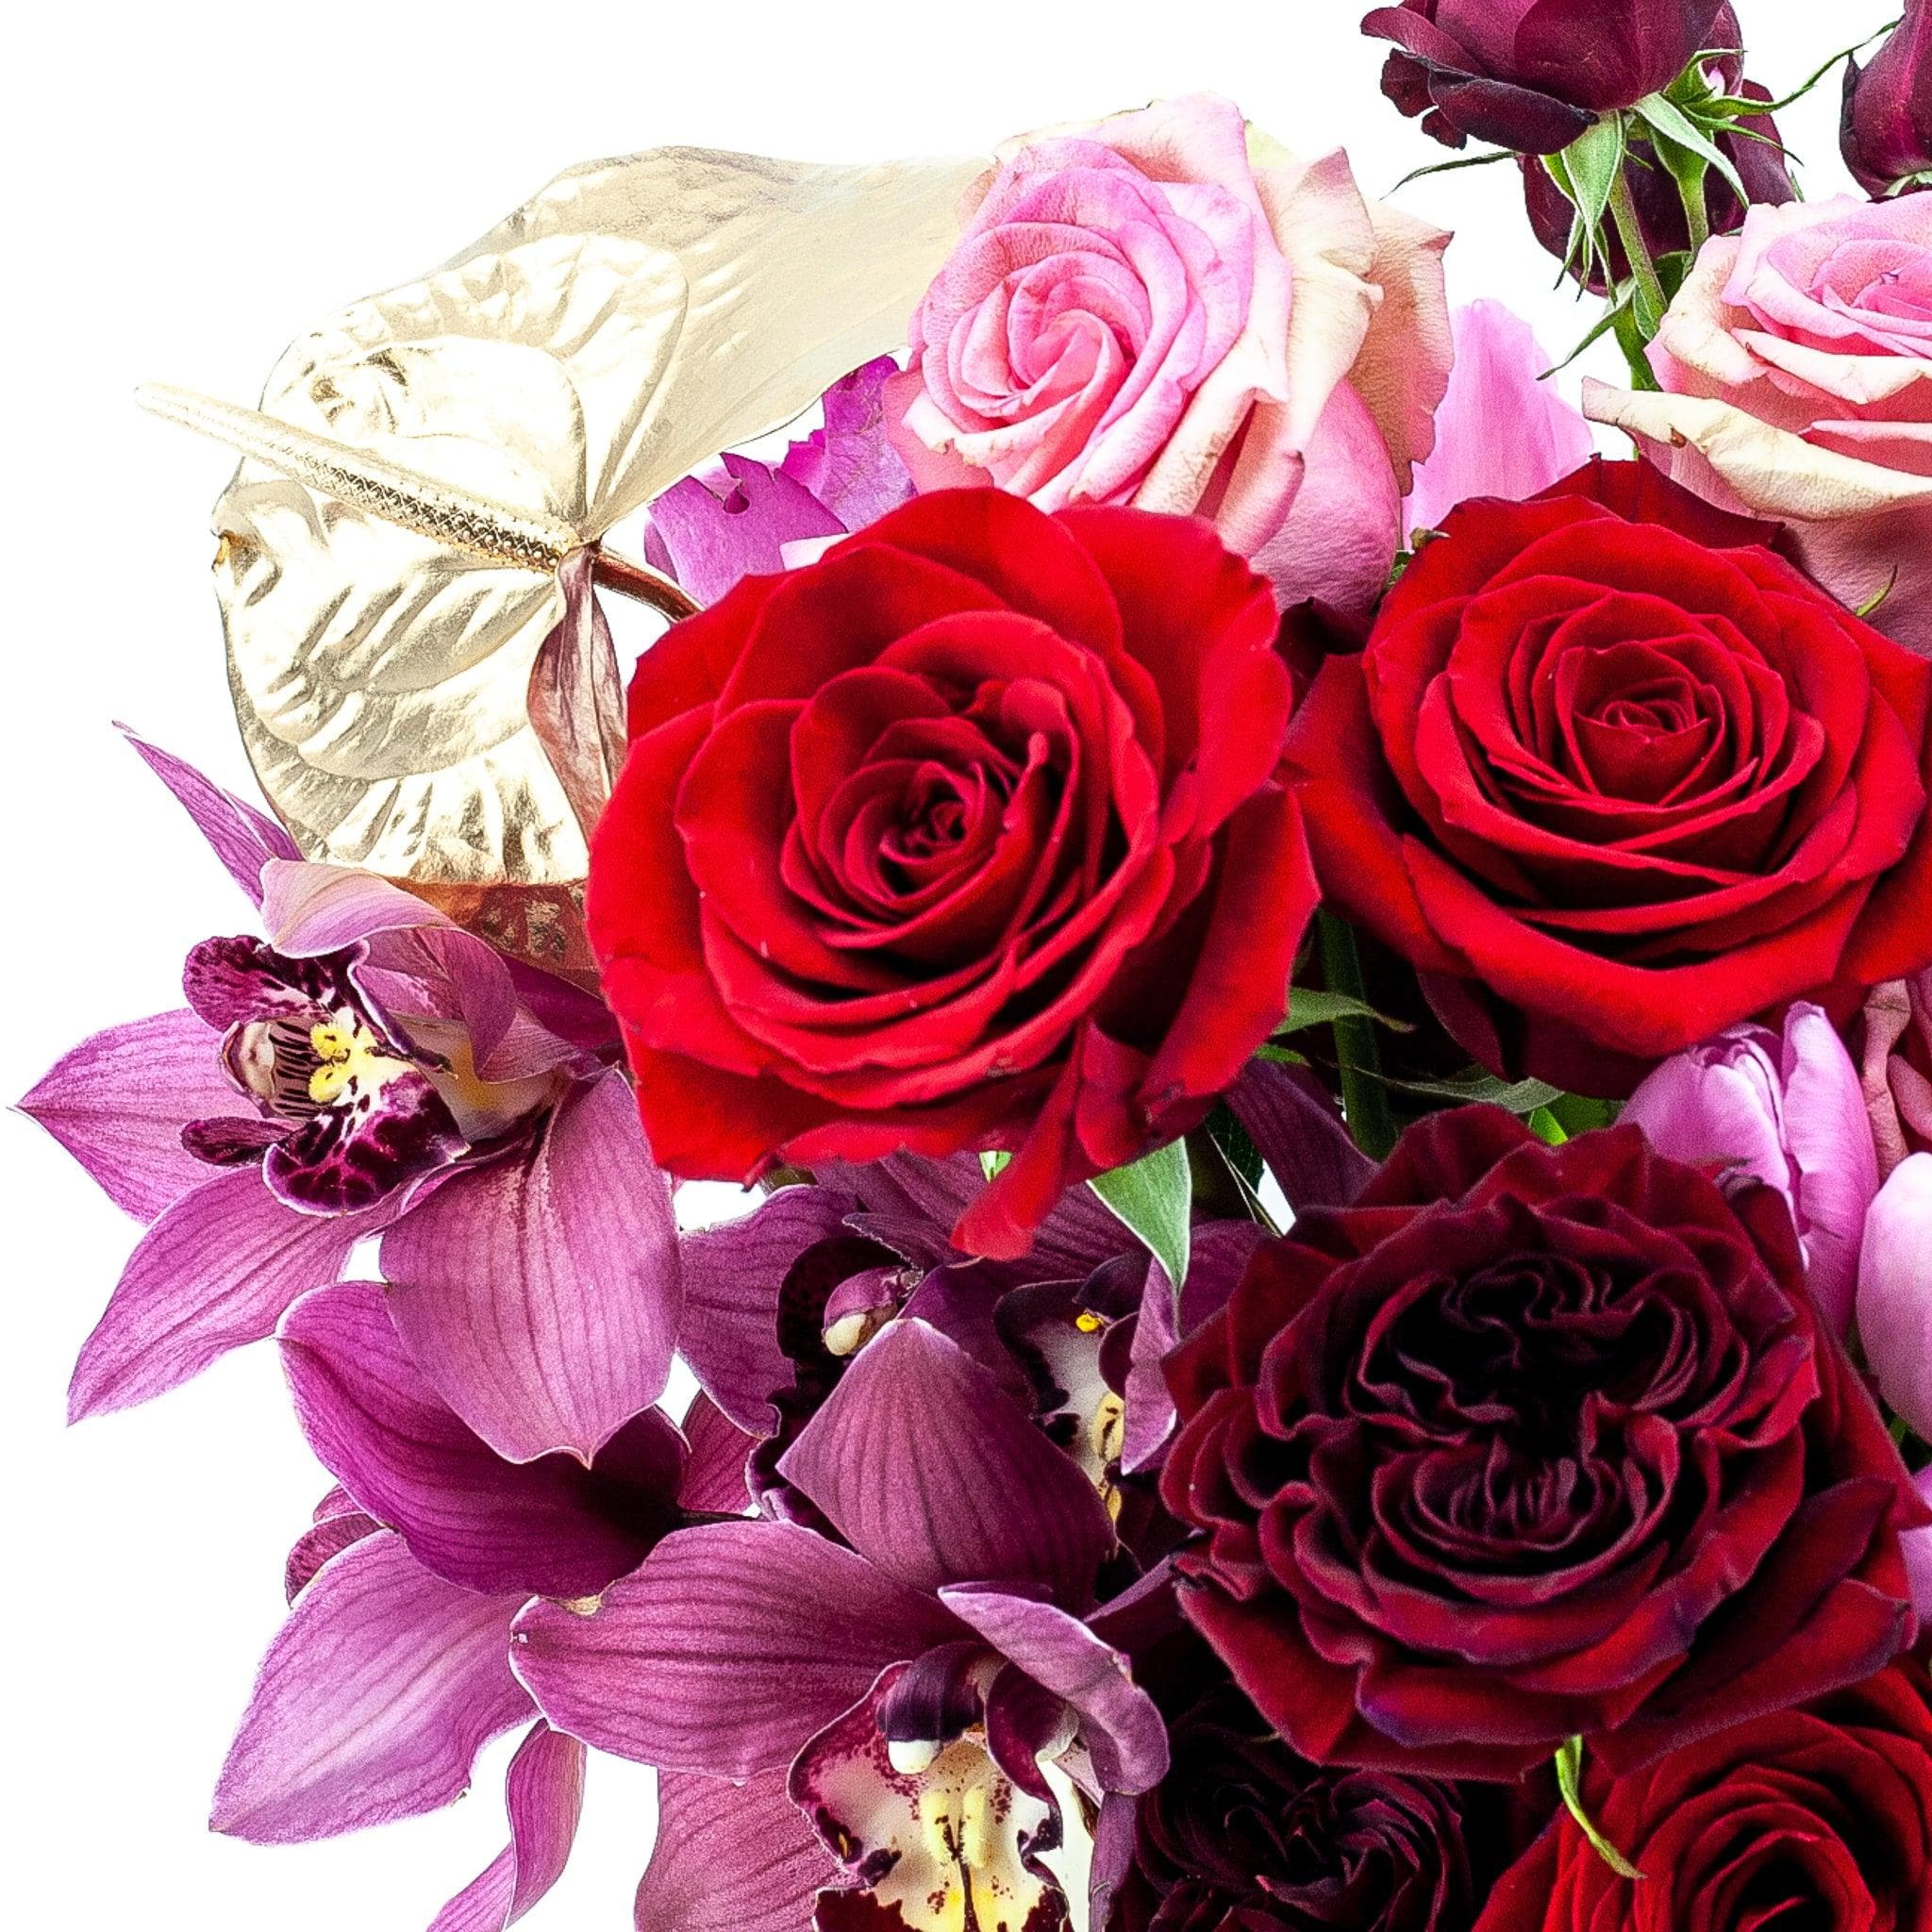 Shop Love Supreme Designer Floral online from Green Fresh Florals + Plants